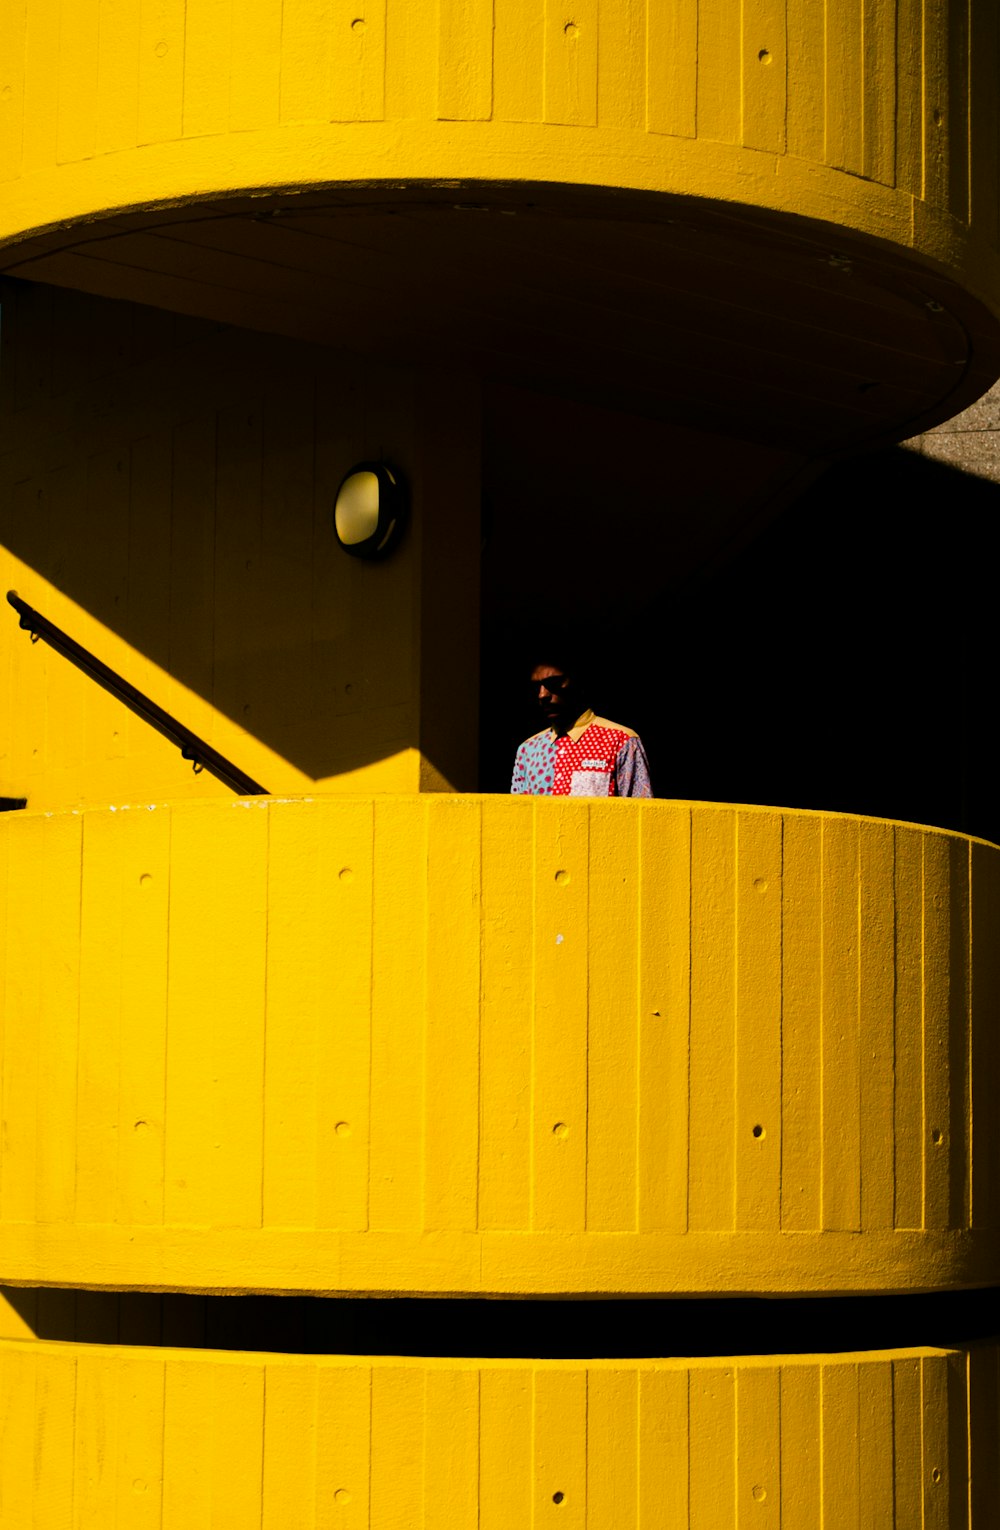 Mann in der Nähe von orangefarbenem Balkon